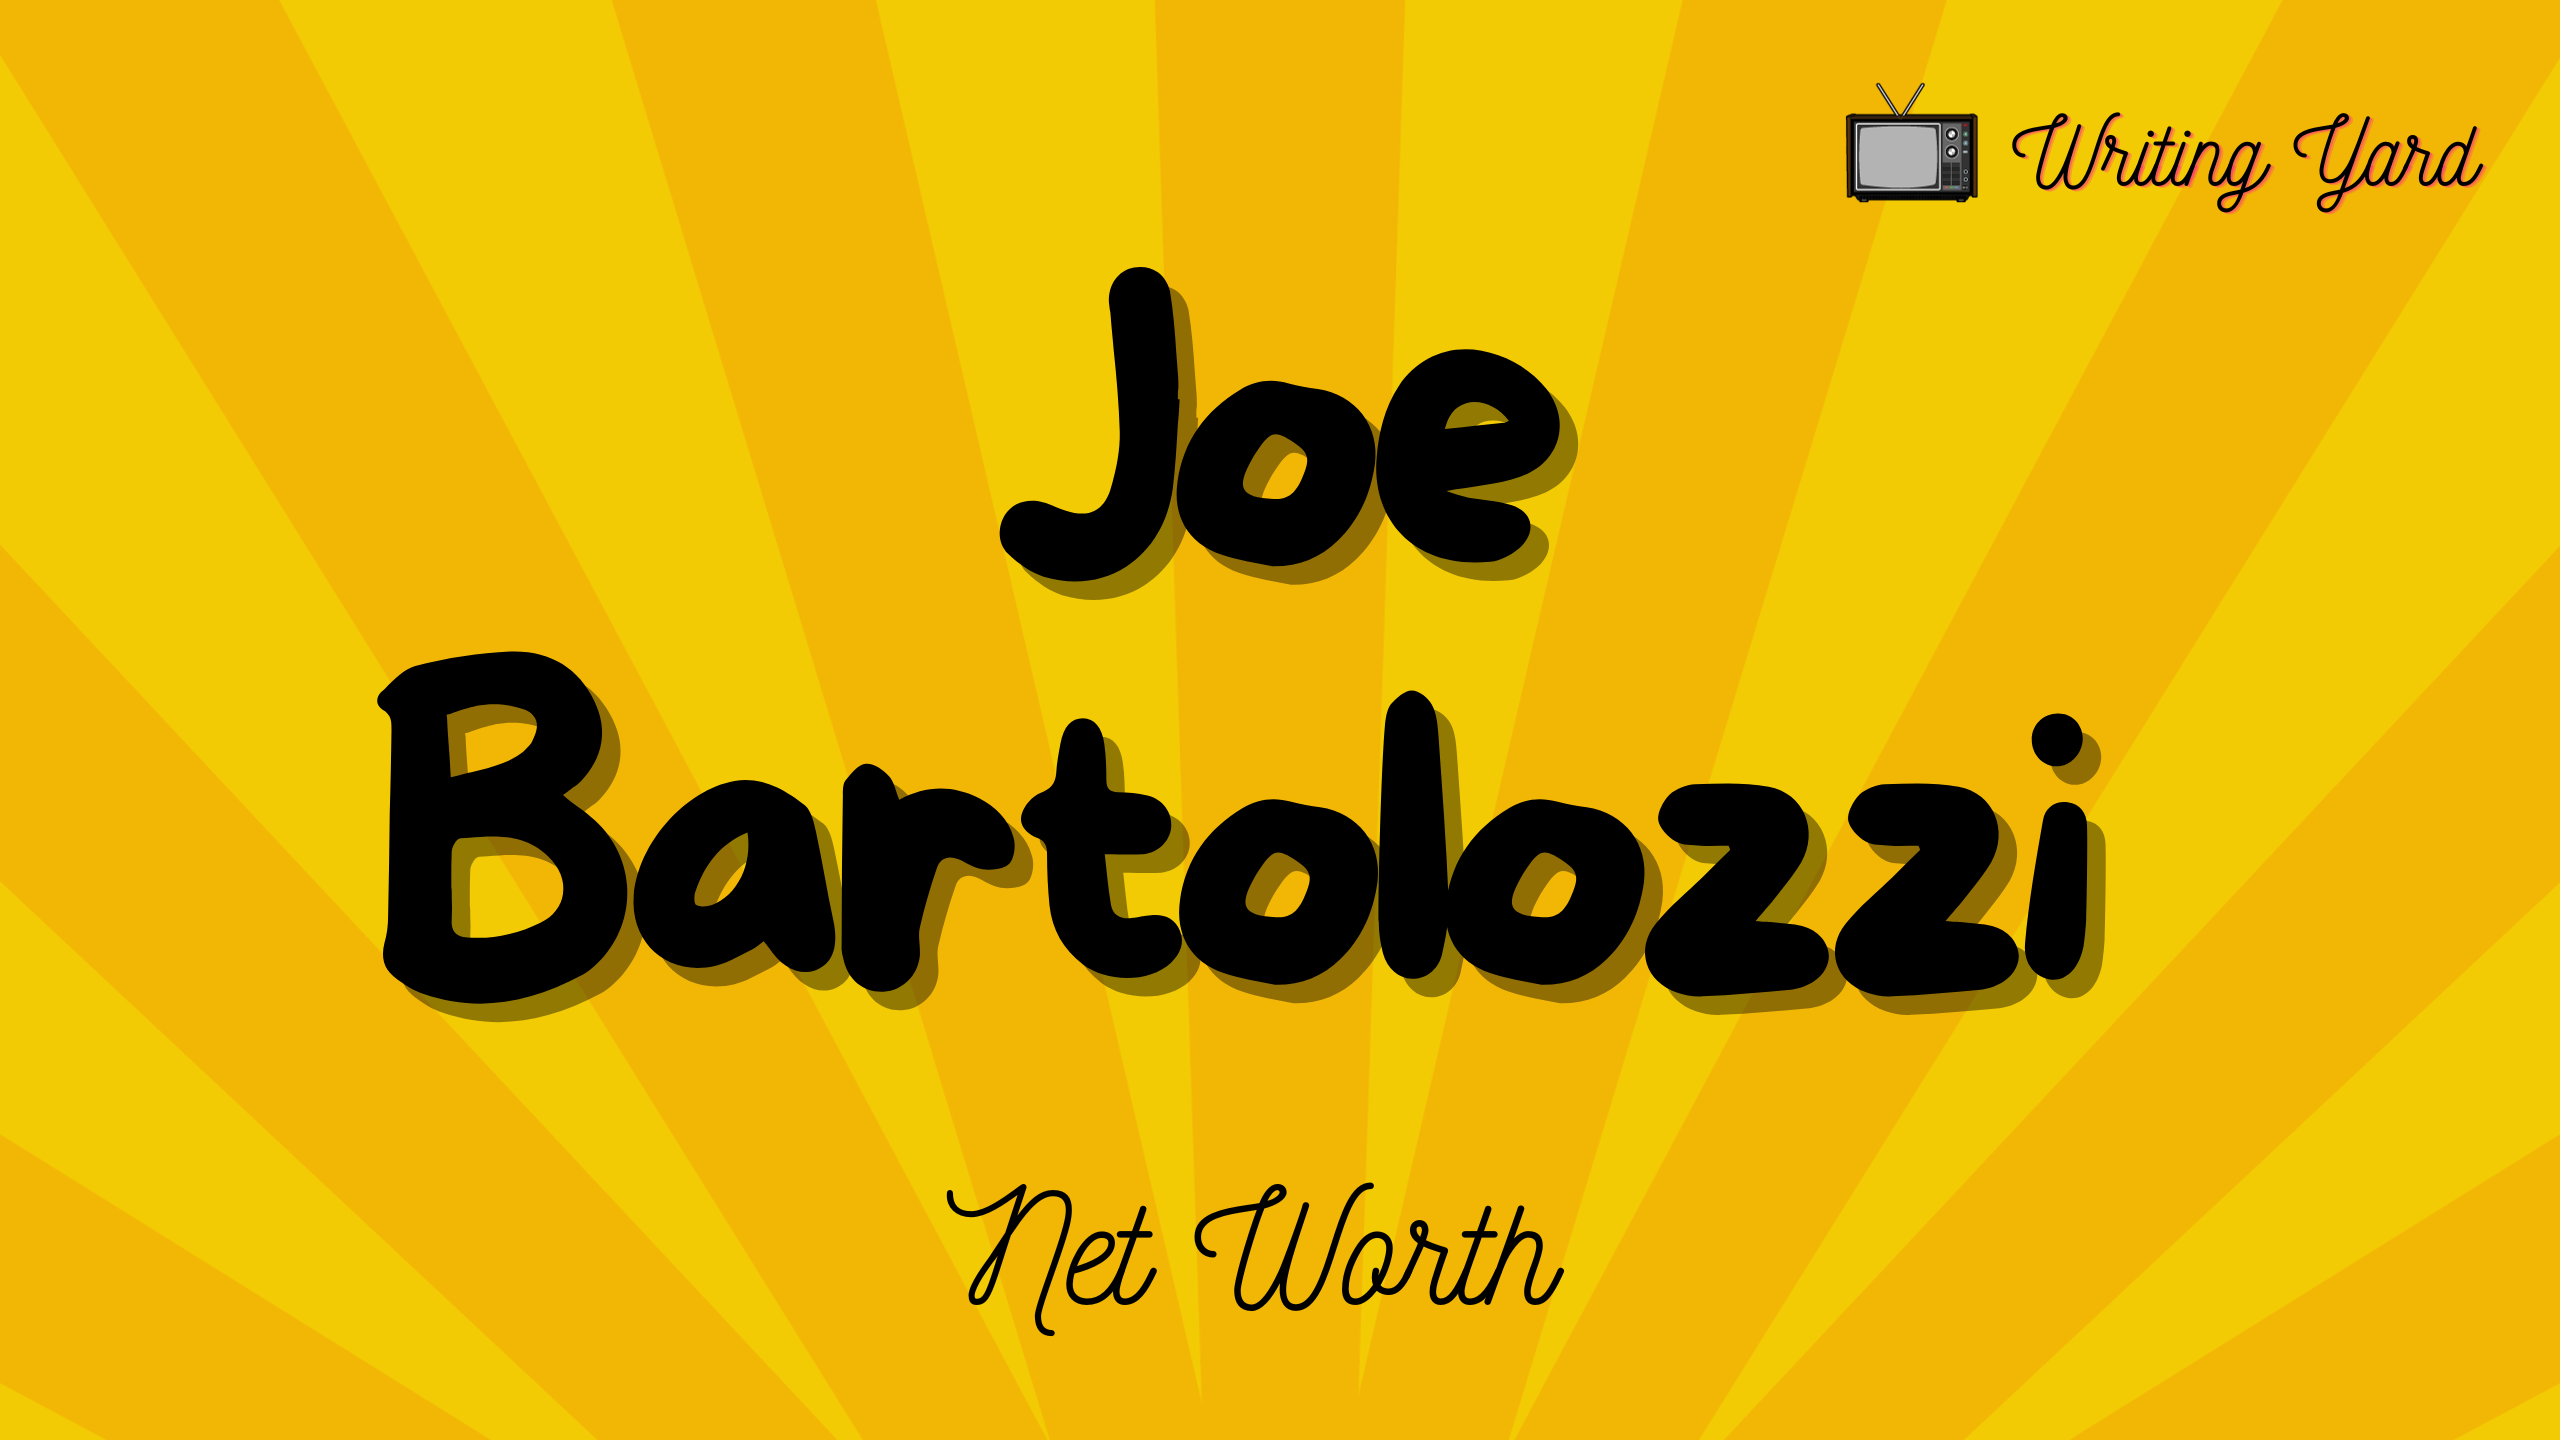 Joe Bartolozzi Net Worth